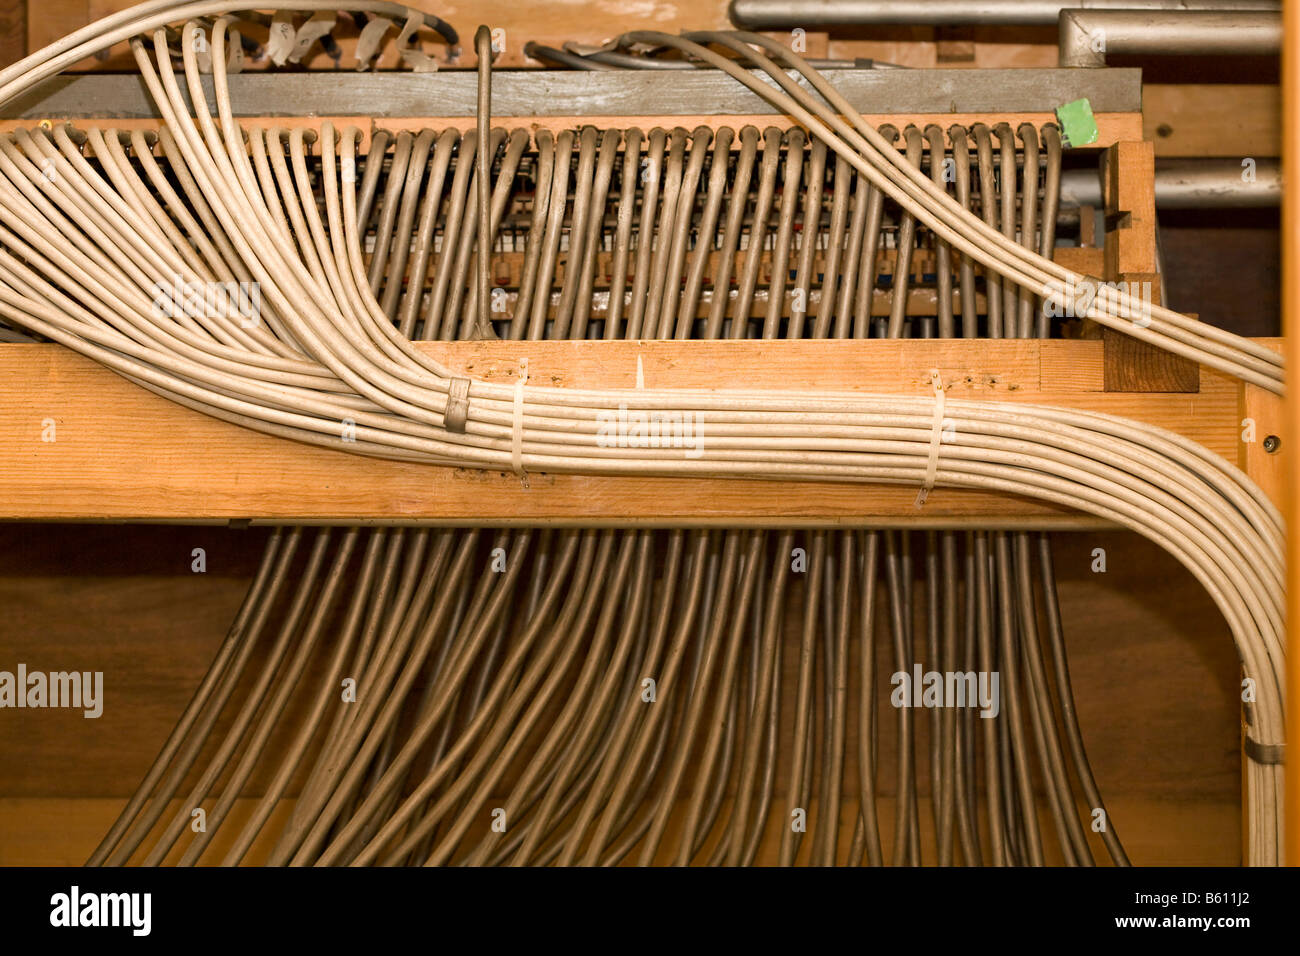 Der Resonanzboden, Brust oder Windlade verwendet, um den Wind zu den Rohren  ein privat restaurierten Orgel am Orgelhof direkt Stockfotografie - Alamy